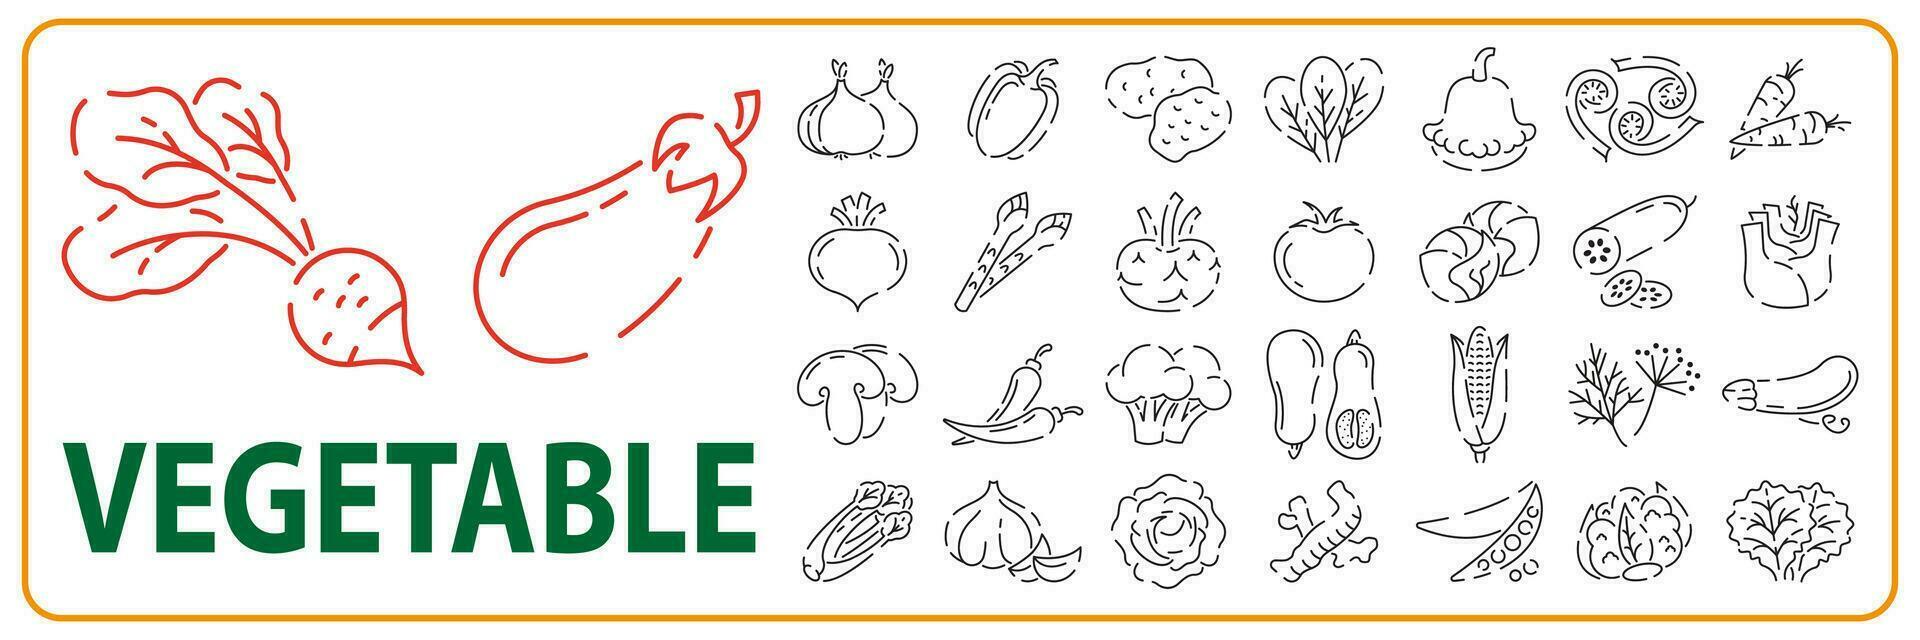 vegetariano, verdura, verdure - minimo magro linea icona impostare. semplice vettore icona come pomodoro, cetriolo, cavolo rapa, cavolfiore, pattypan schiacciare, Fiddleheads bene cibo e Salute.